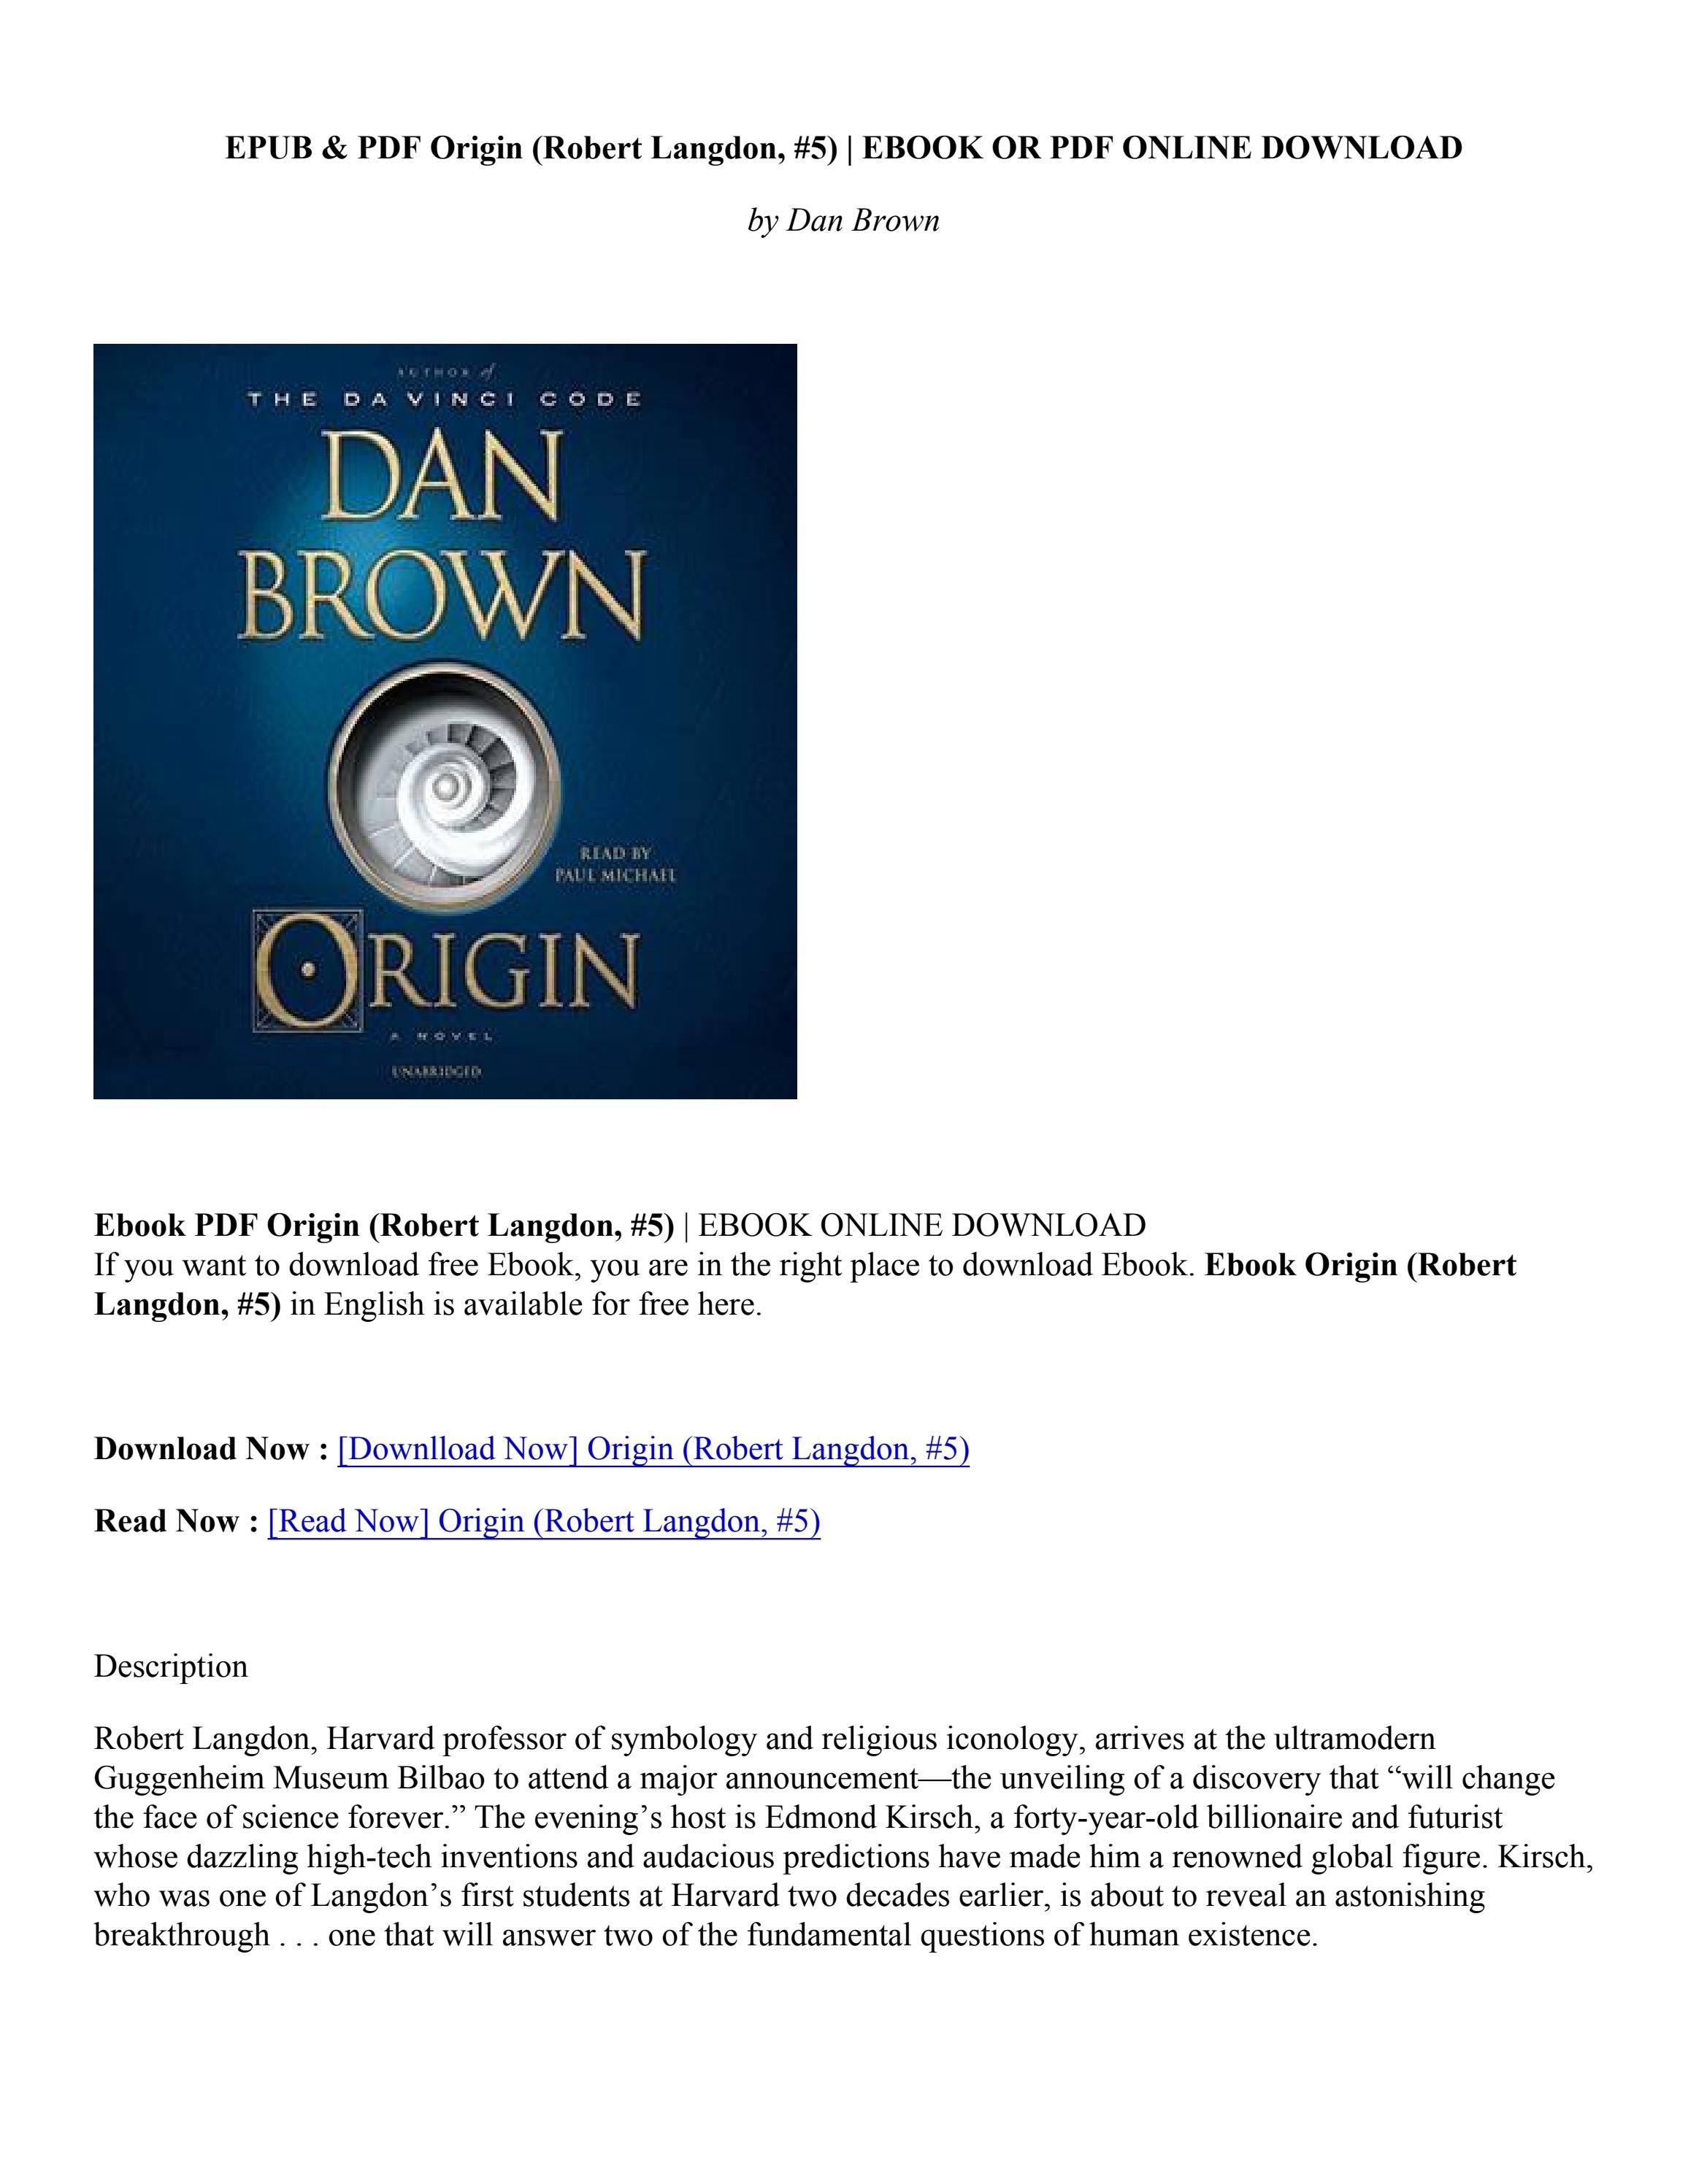 dan brown books pdf download